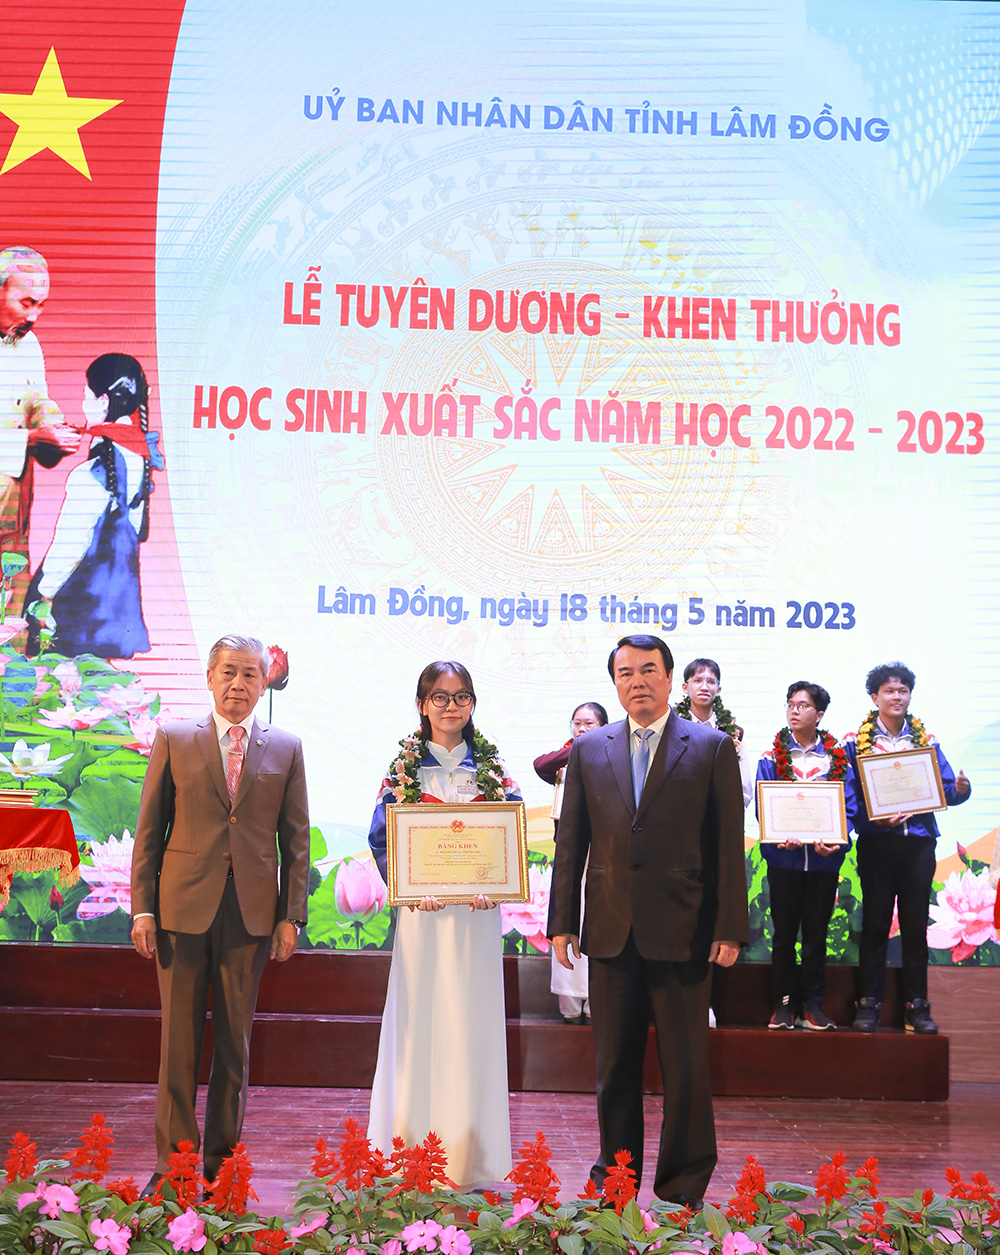 Tỉnh Lâm Đồng tuyên dương - khen thưởng 86 học sinh xuất sắc năm học 2022 - 2023